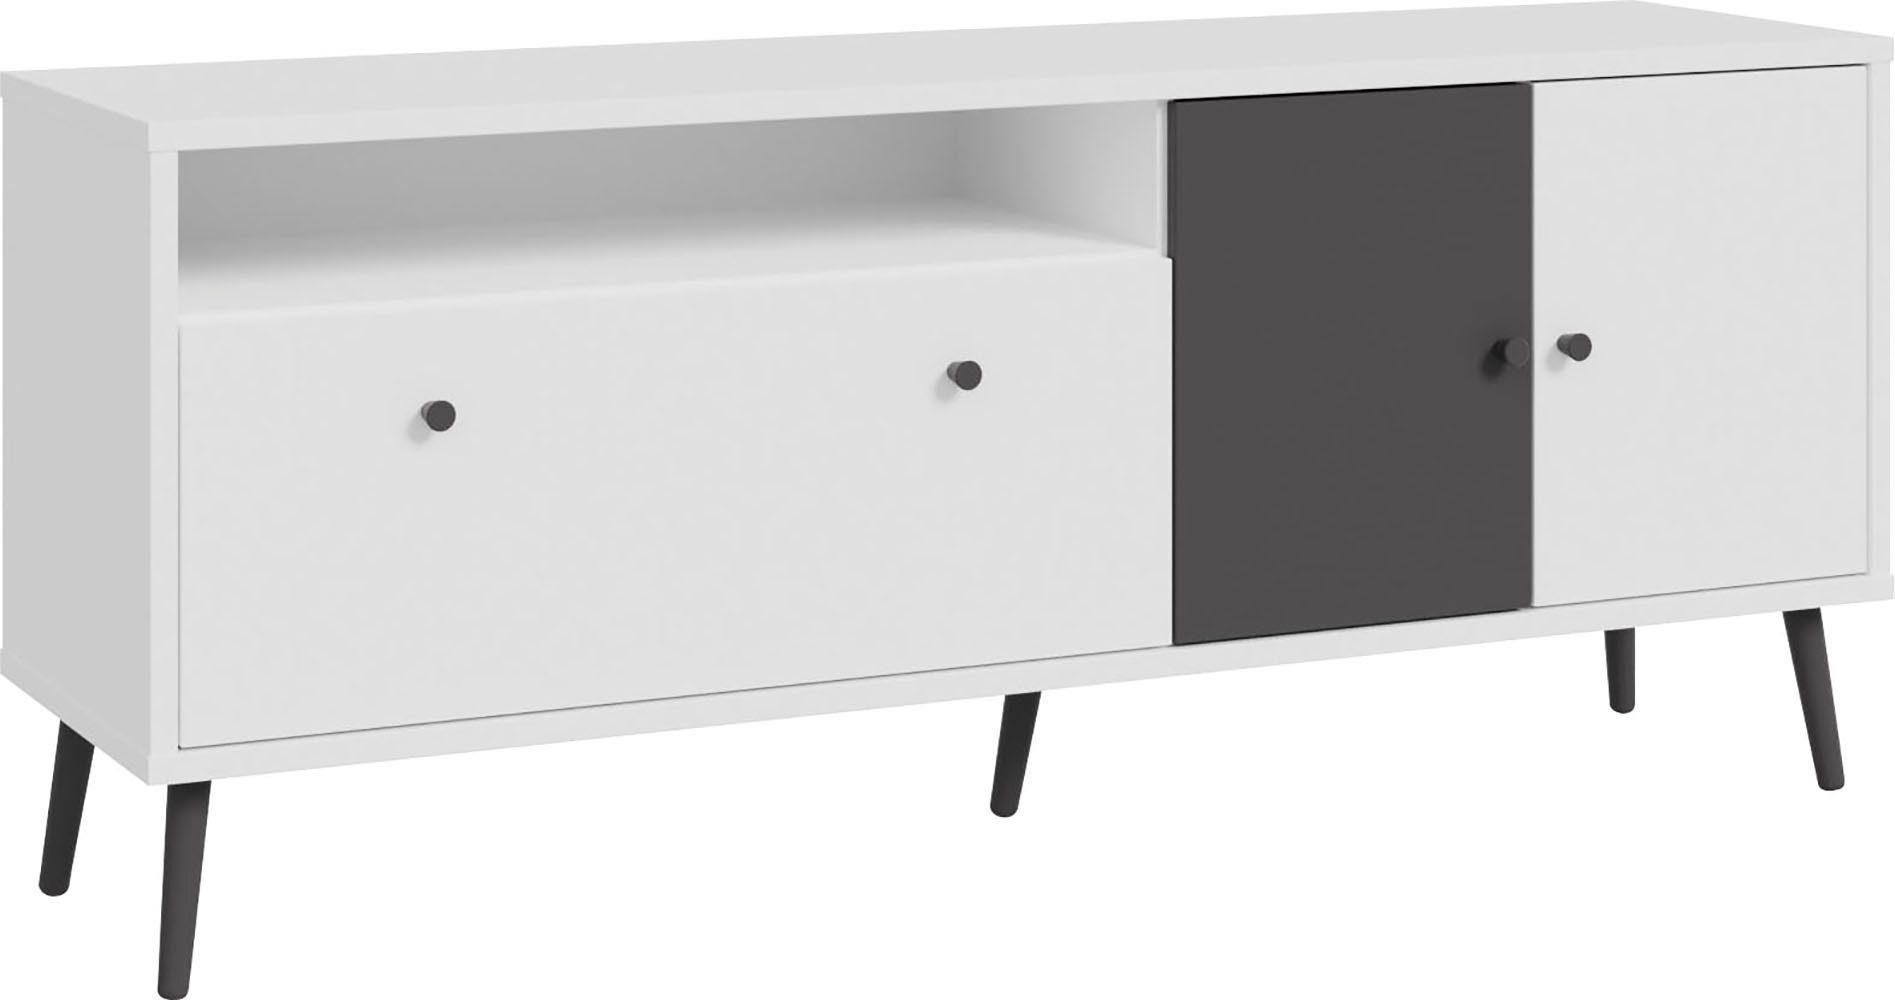 FORTE TV-Board Harllson EasyKlix by Forte, die neue geniale Art Möbel aufzubauen Weiß/Uni Wolfram Grau